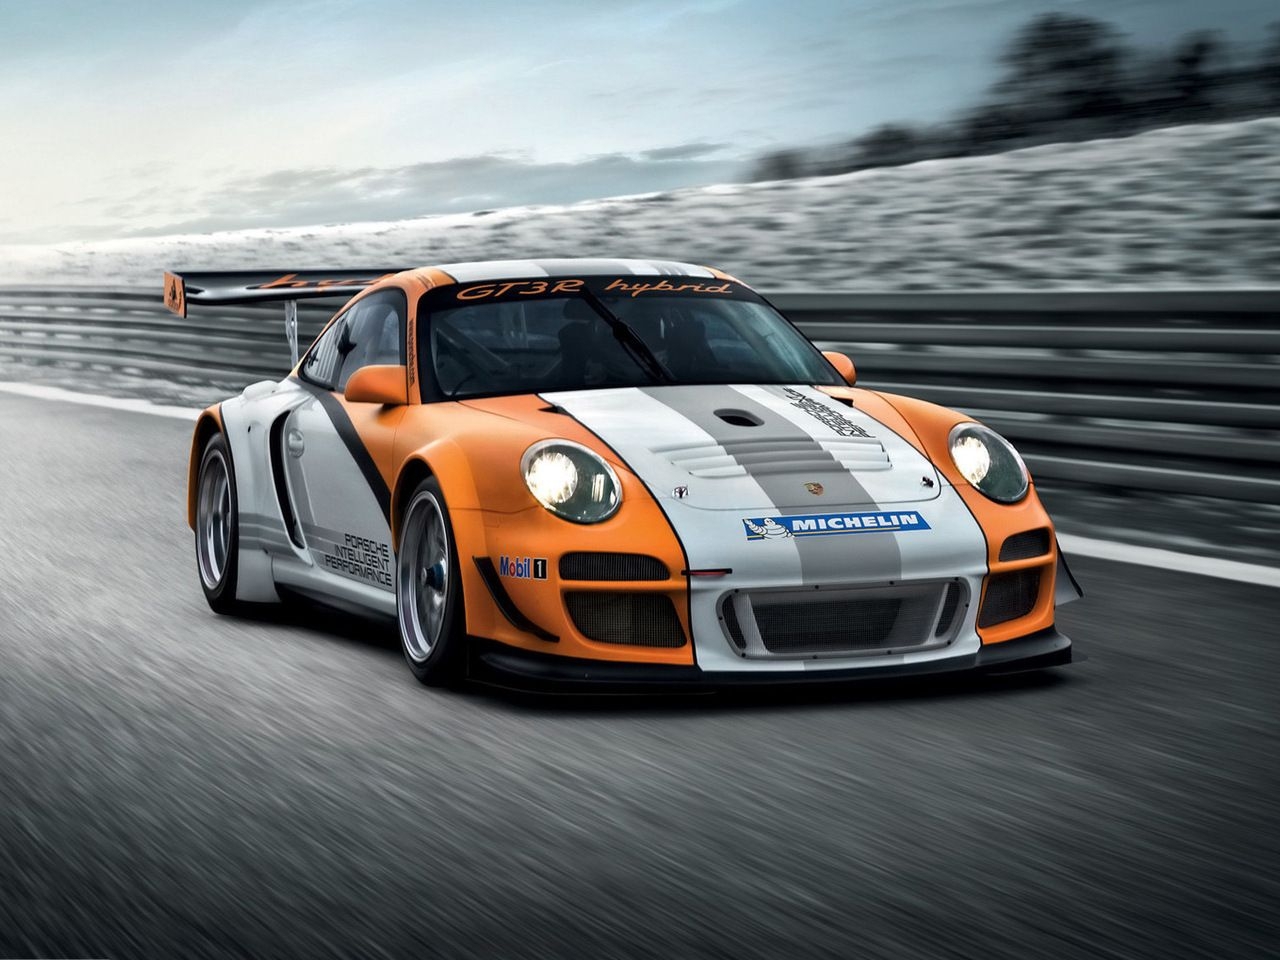 Descarga gratuita de fondo de pantalla para móvil de Automóvil, Transporte, Porsche.